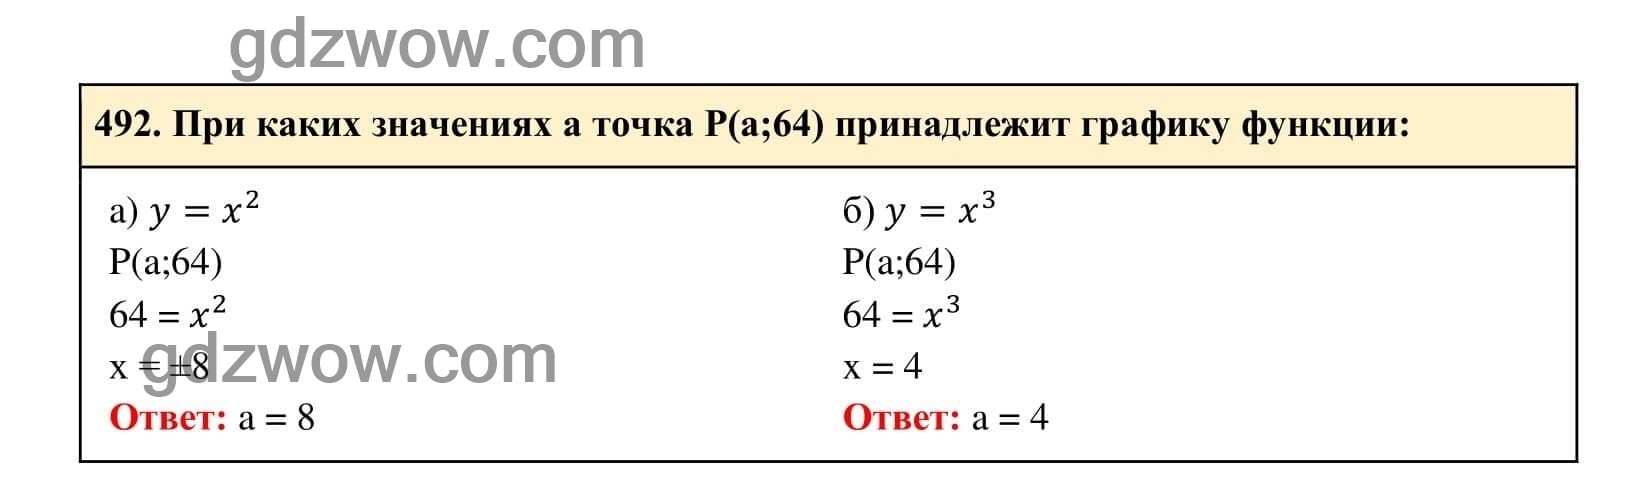 Упражнение 492 - ГДЗ по Алгебре 7 класс Учебник Макарычев (решебник) - GDZwow